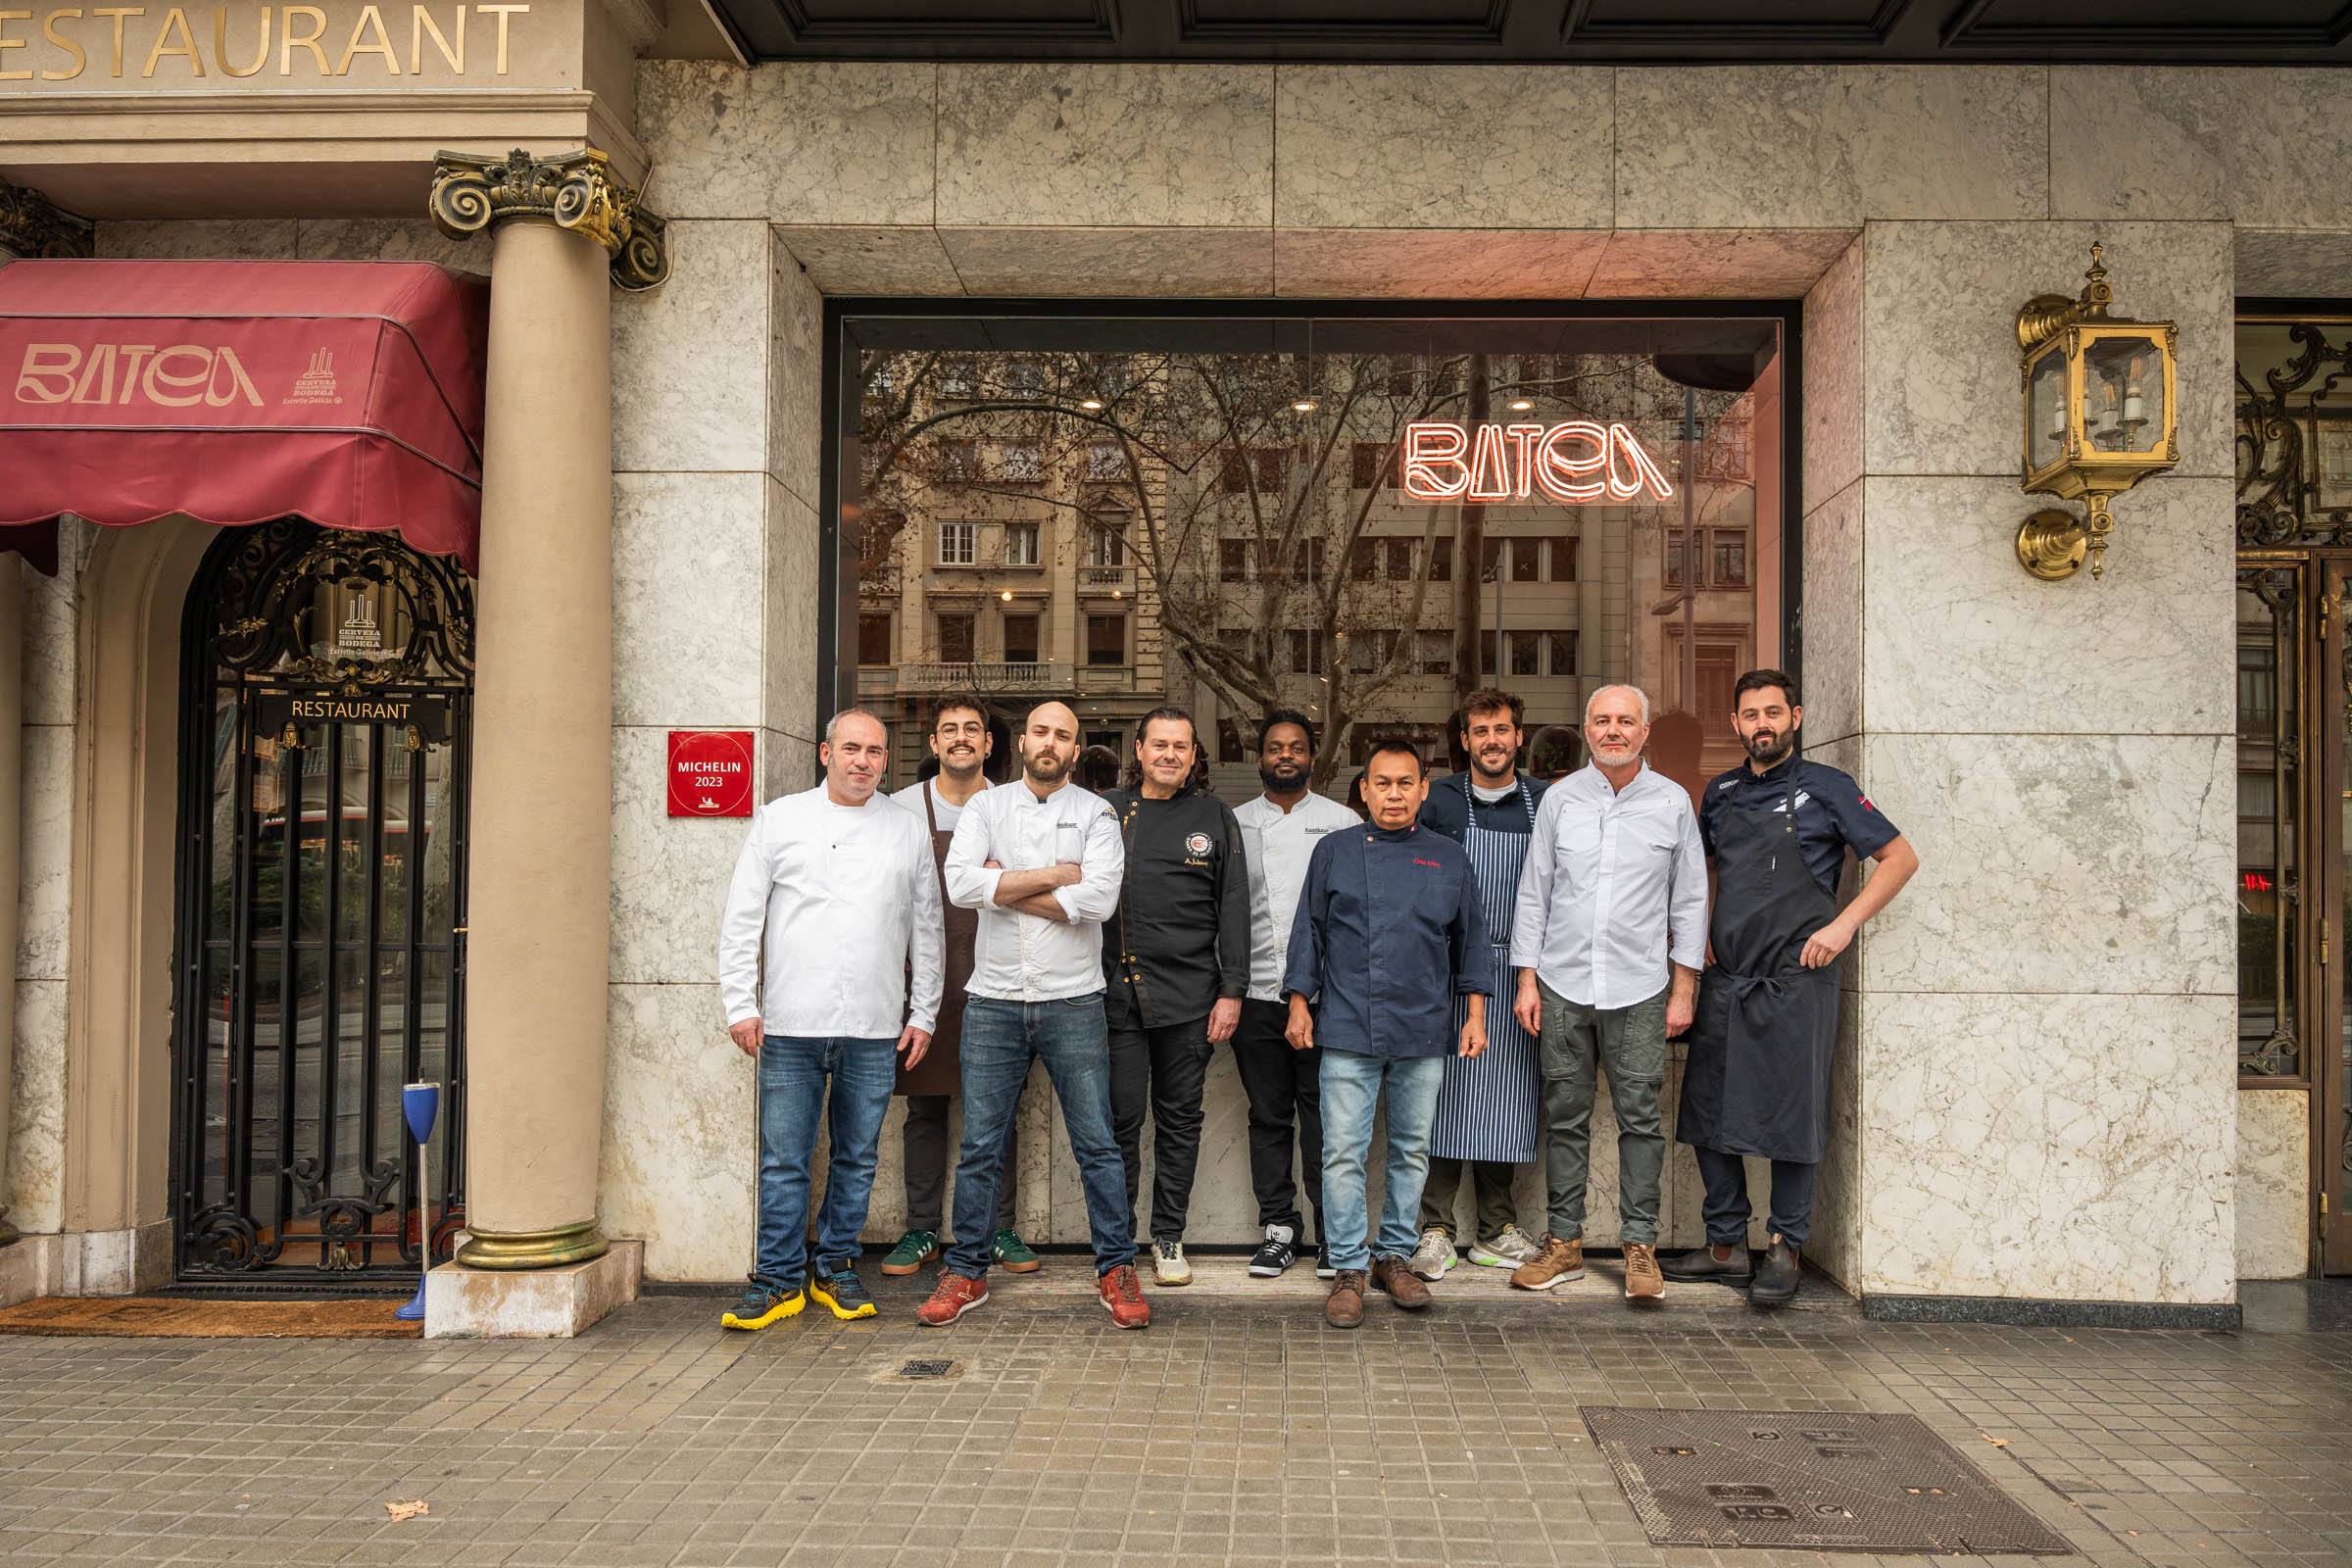 La mejor gastronomía aranesa disponible en estos restaurantes de Barcelona